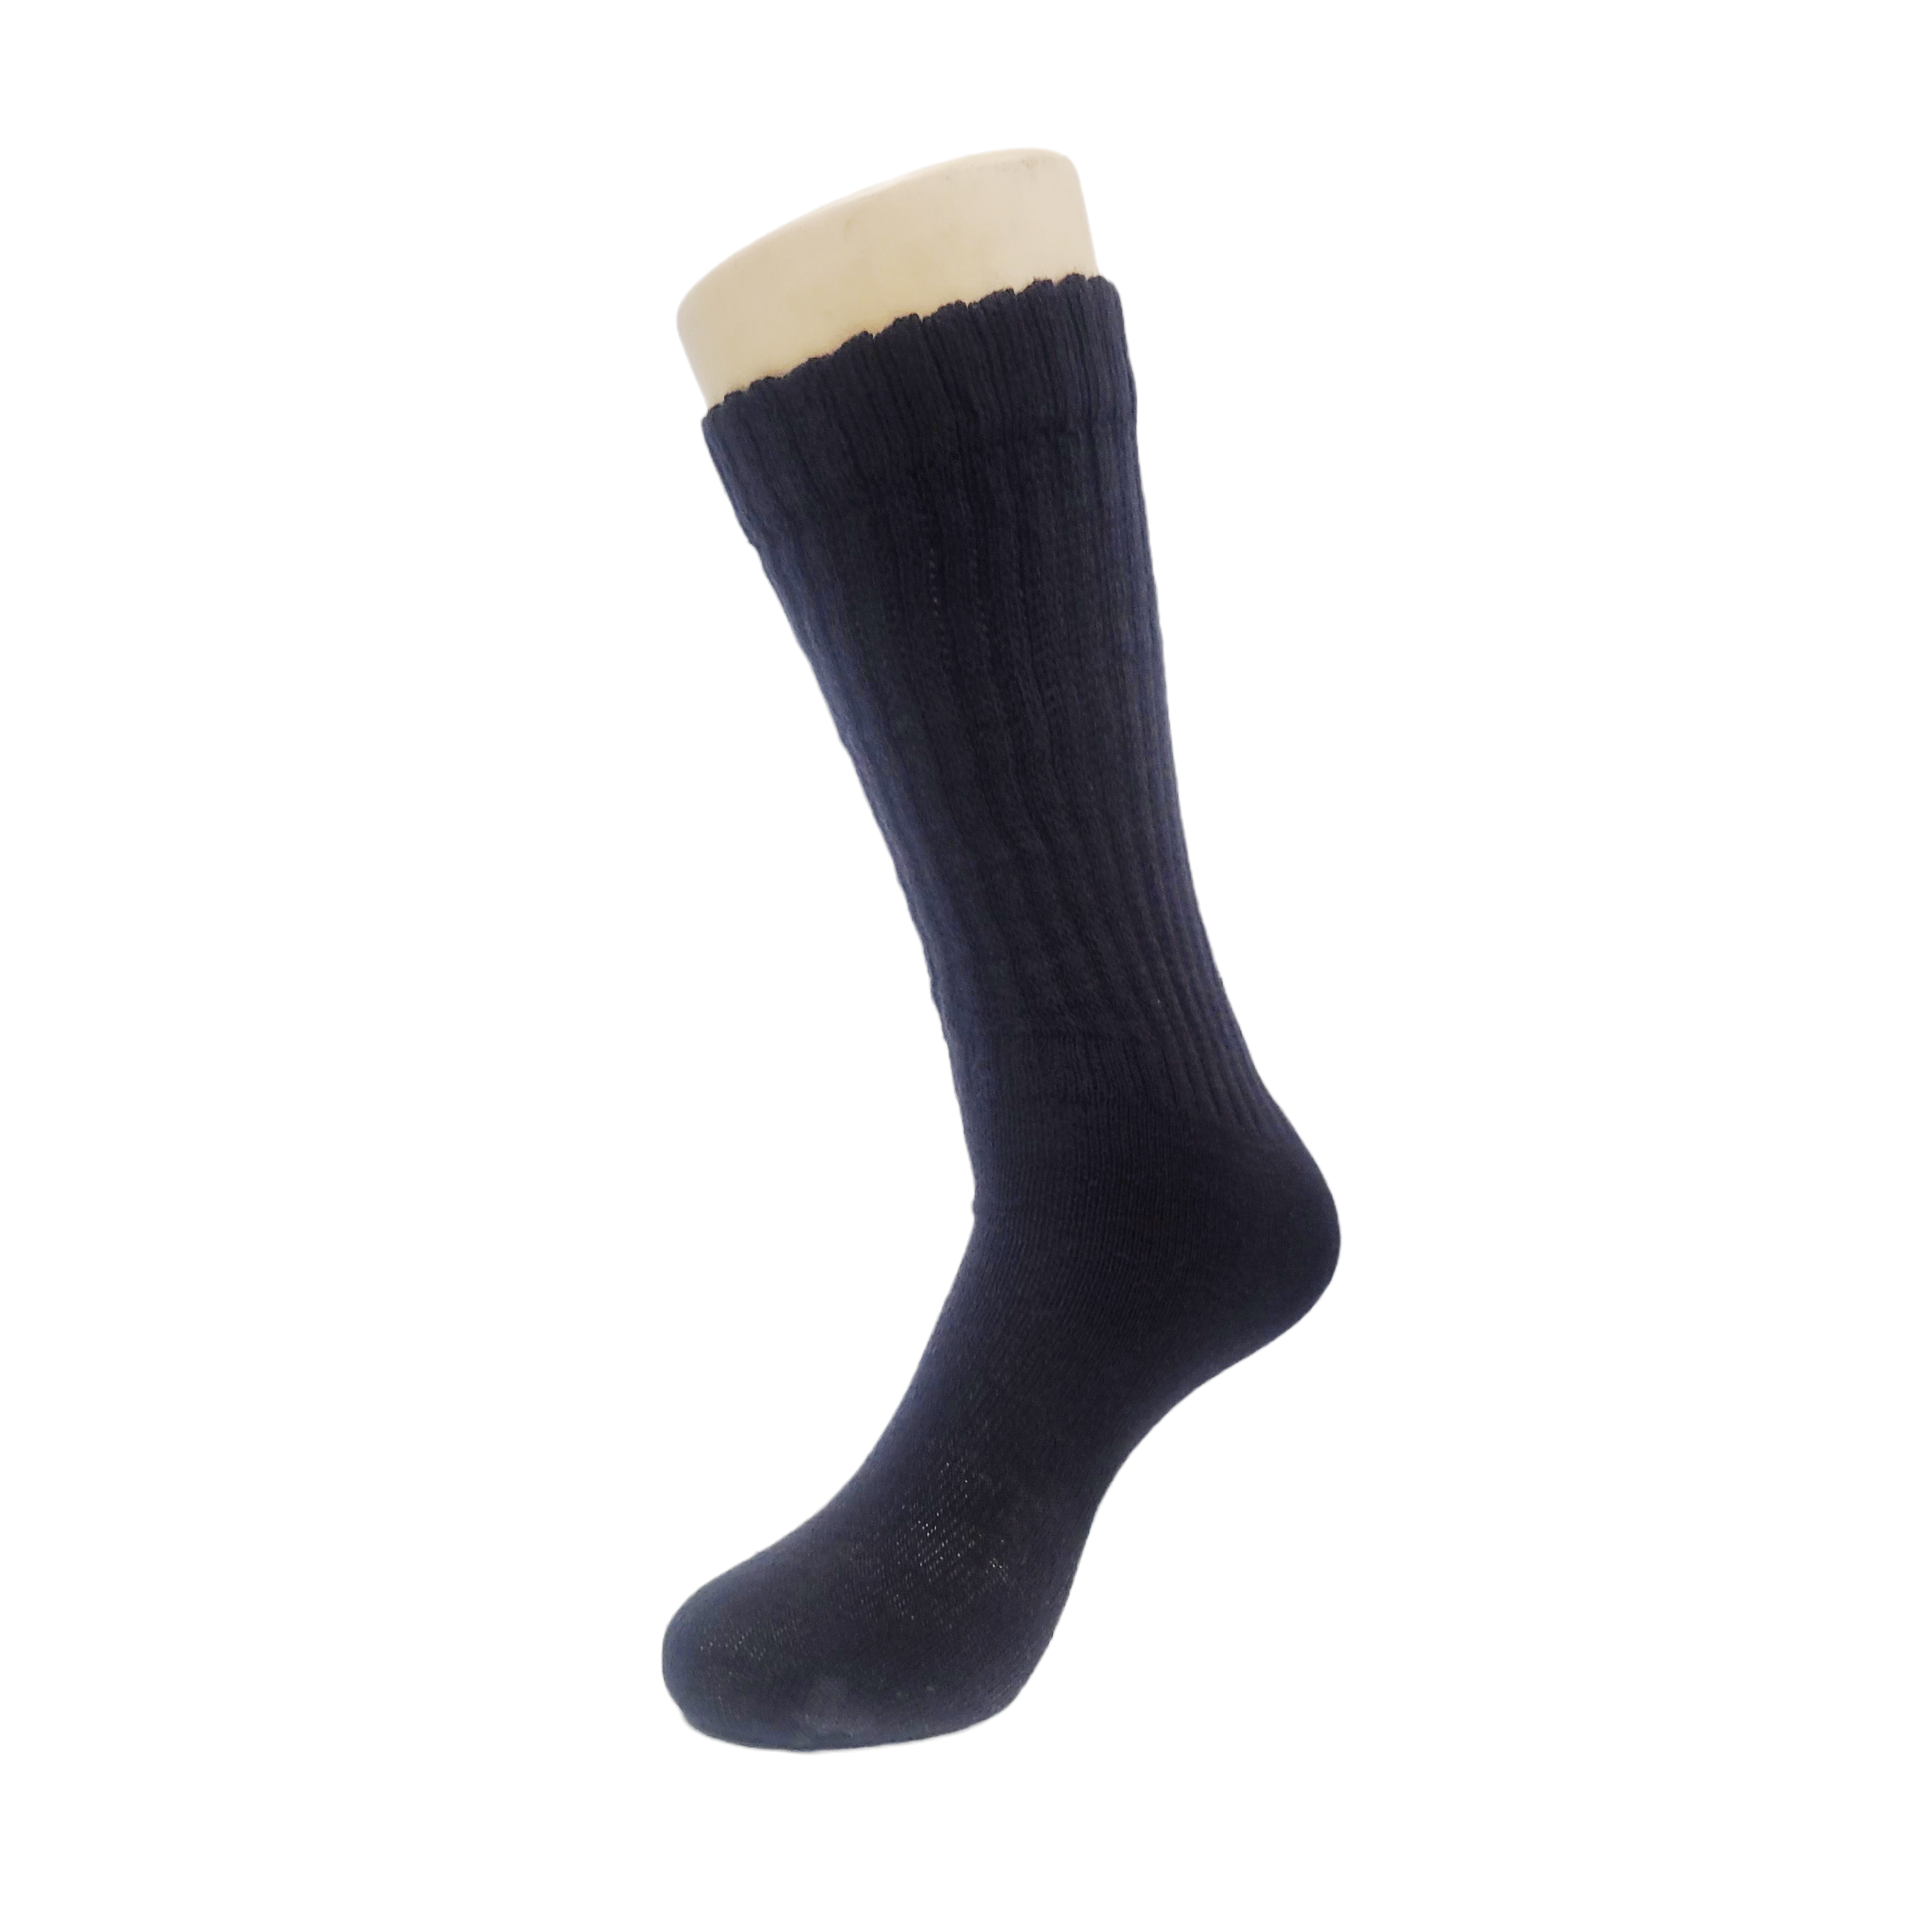 Black Slouch Socks (Adult Medium)